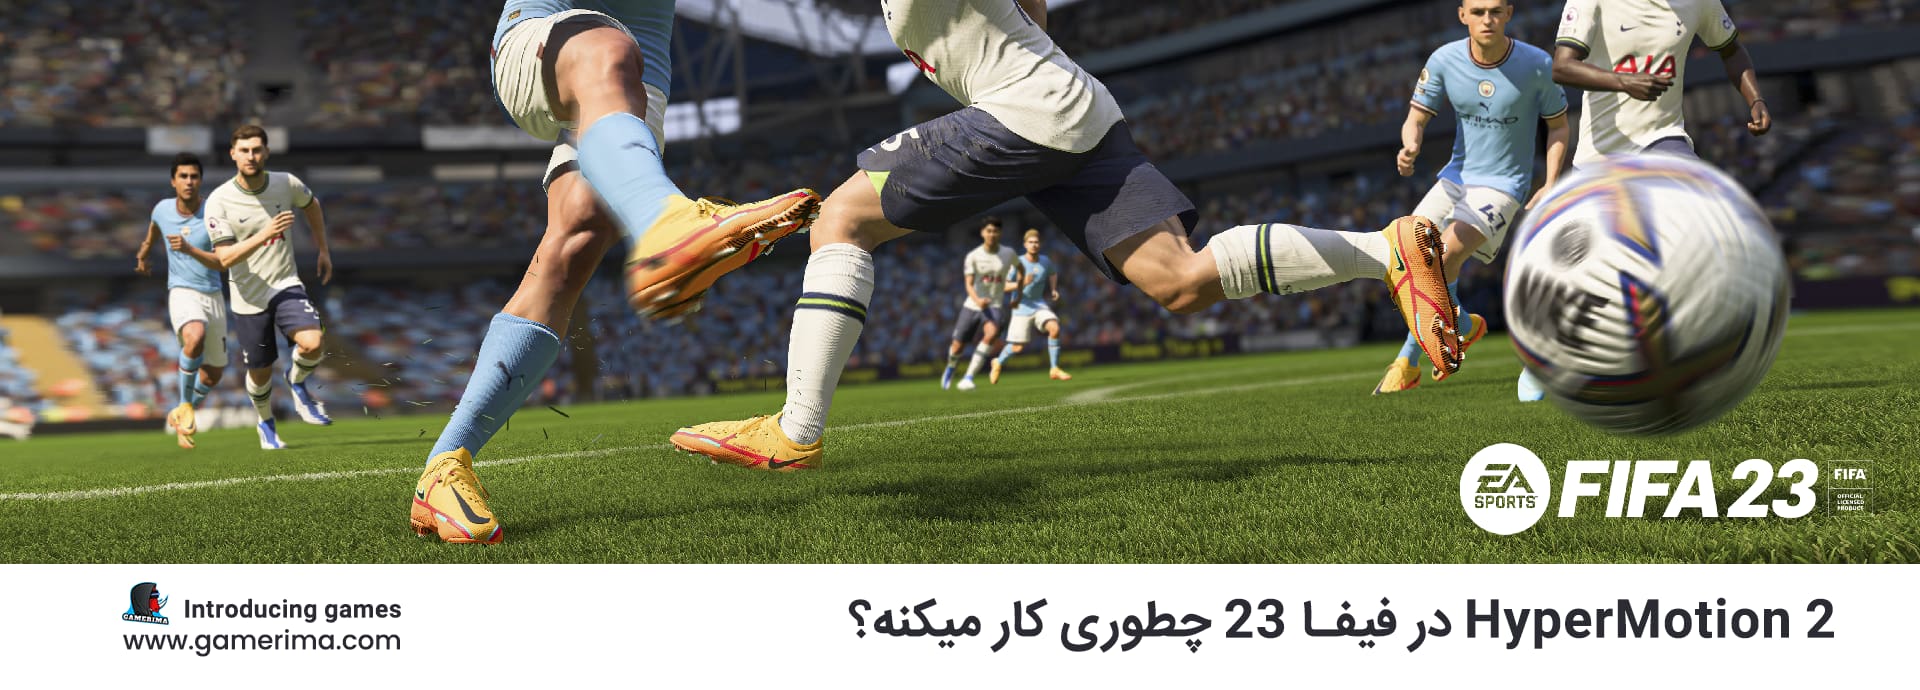 تکنولوژی HyperMotion 2 در FIFA 23 چطوری کار میکنه؟